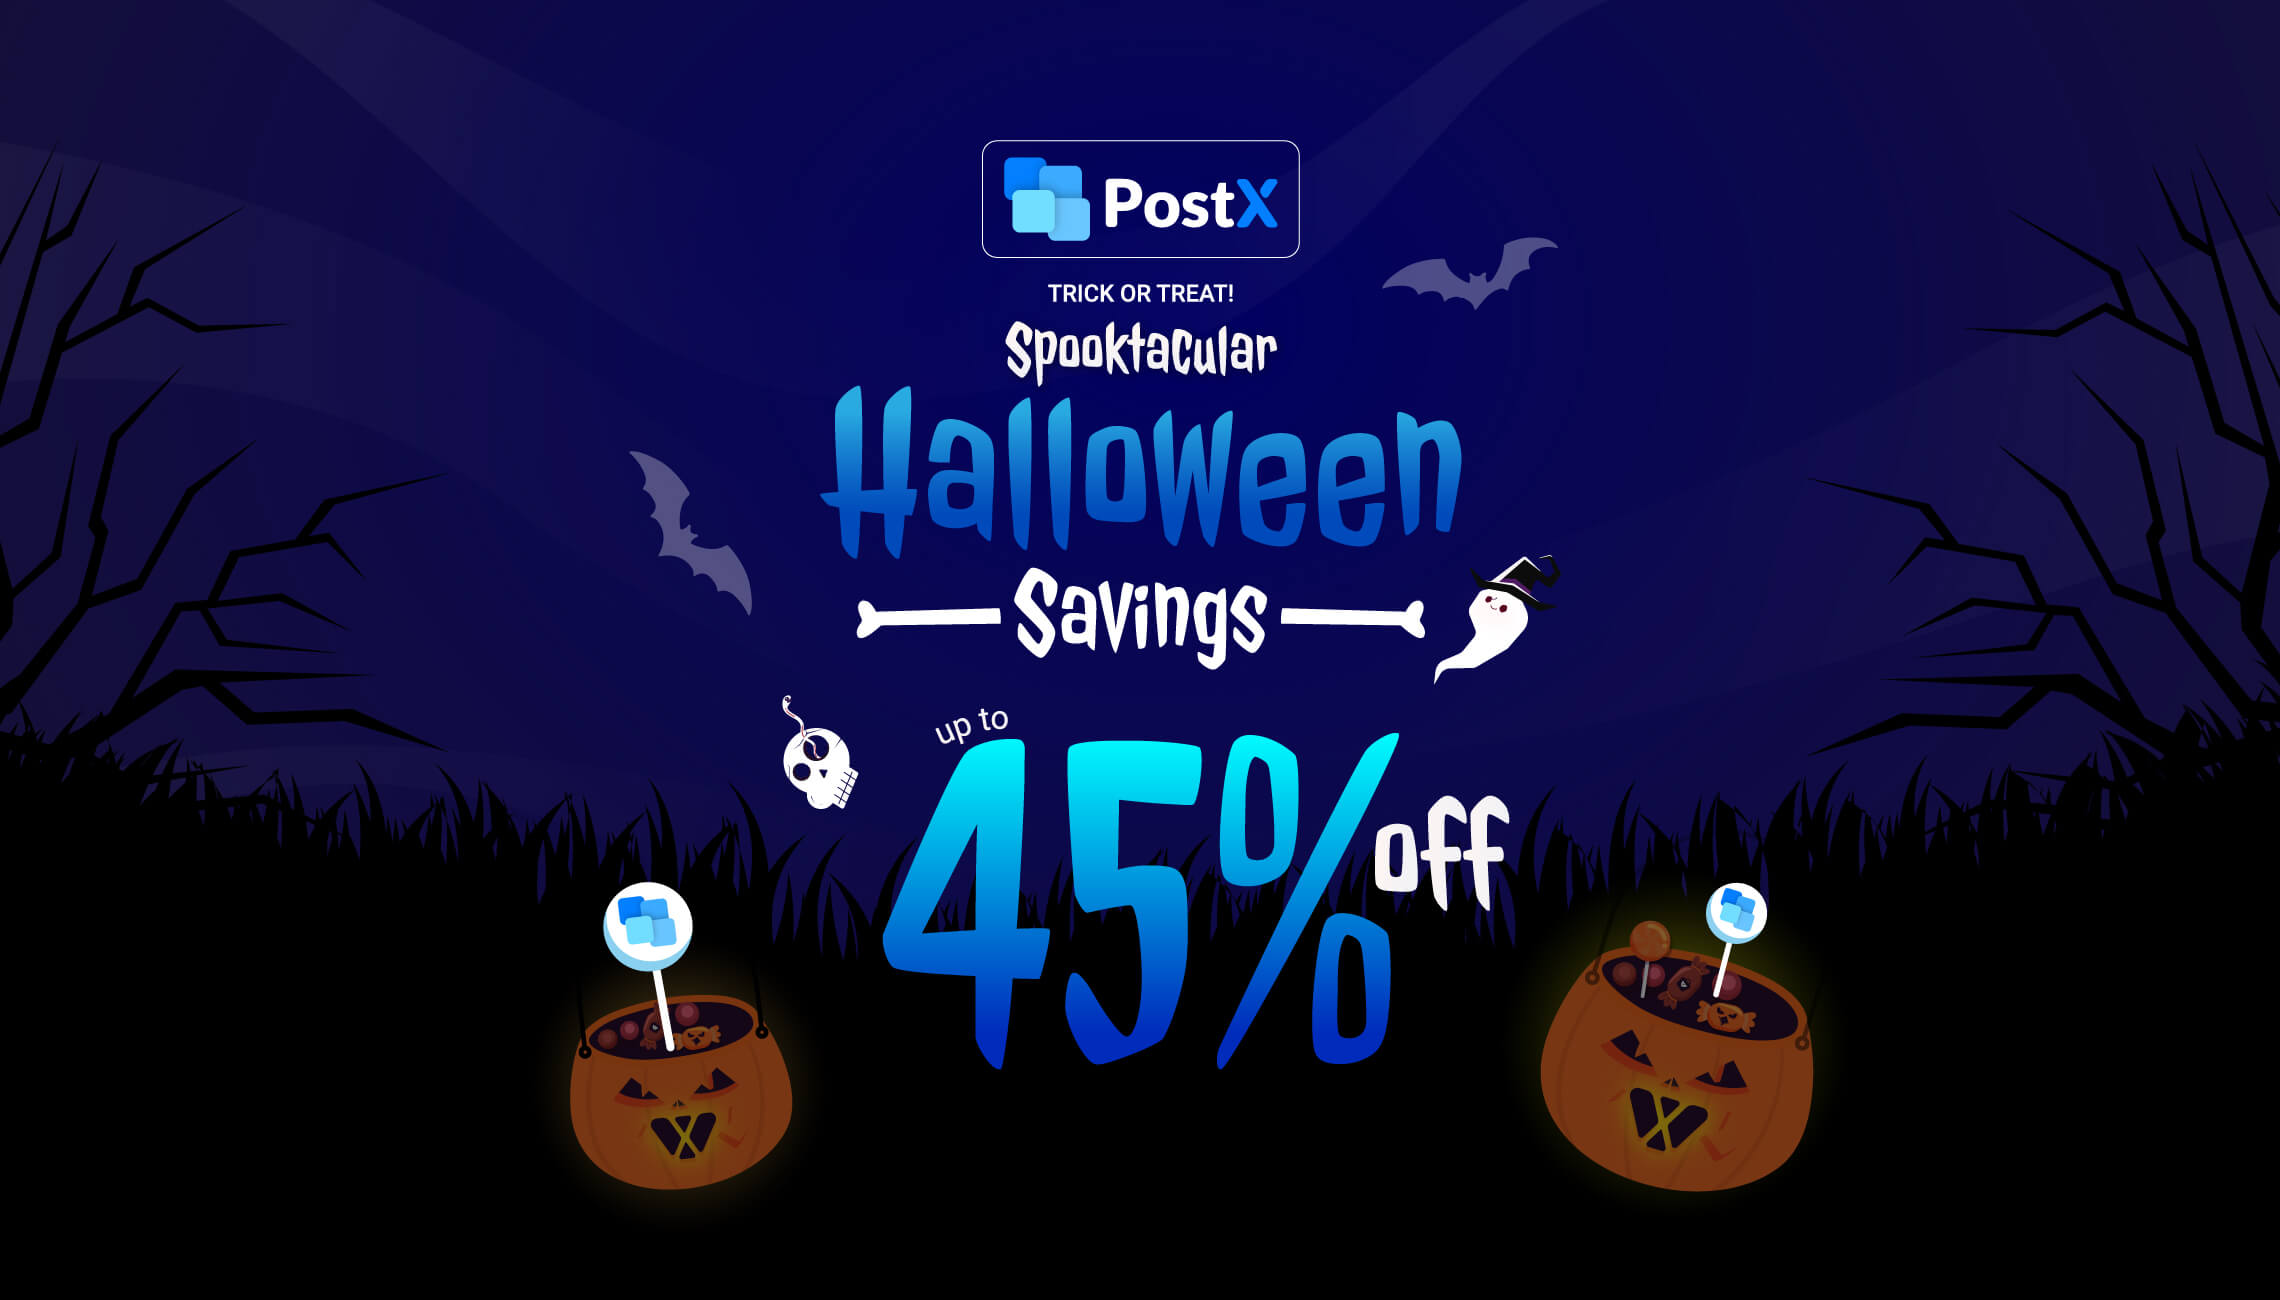 PostX halloween offer